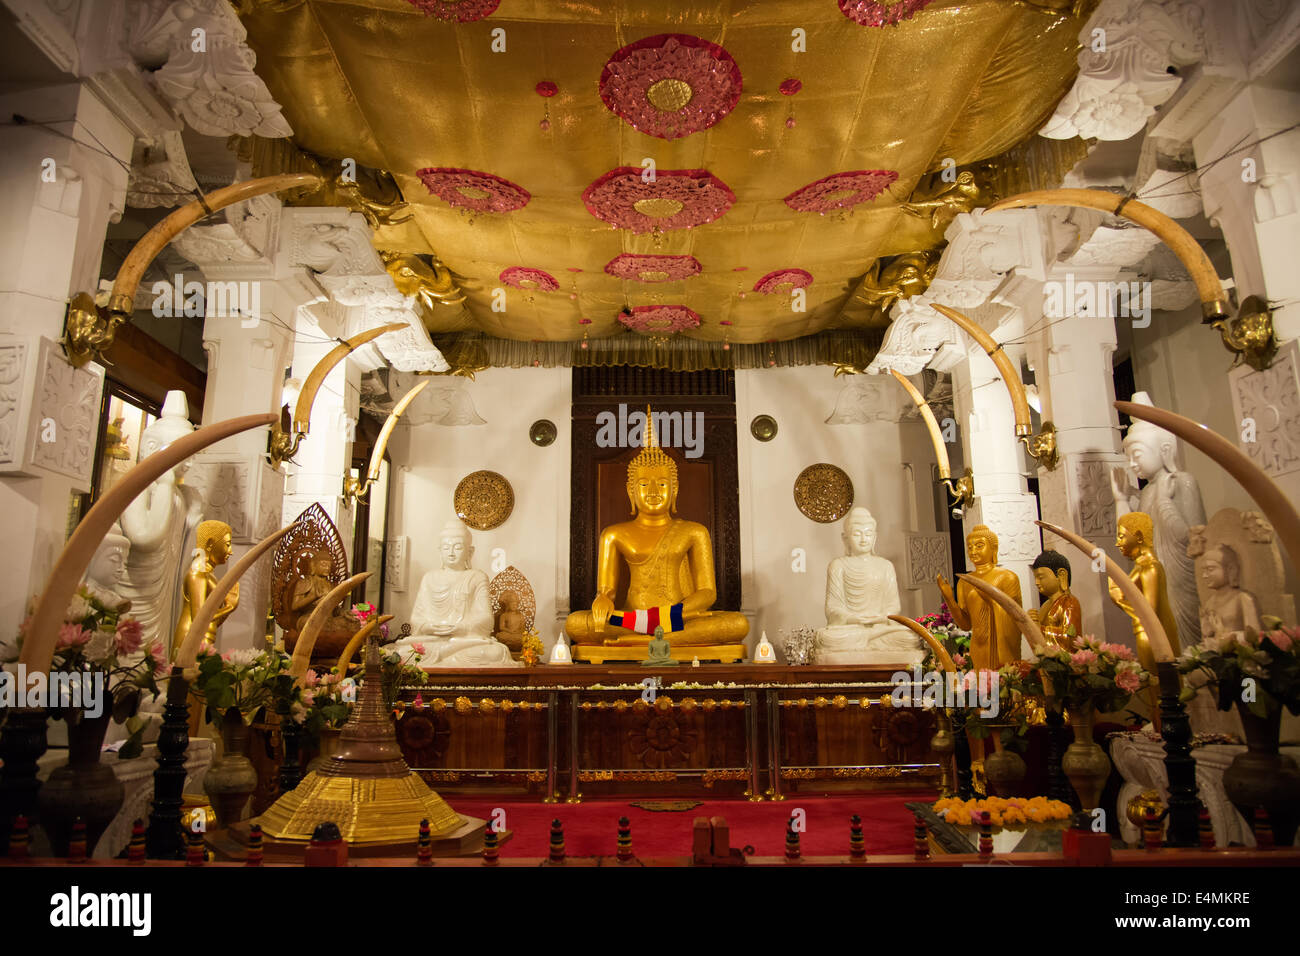 Lieu de culte dans le temple de la dent sacrée de Kandy, où don par congrégations bouddhistes de pays asiatiques sont exposés Banque D'Images